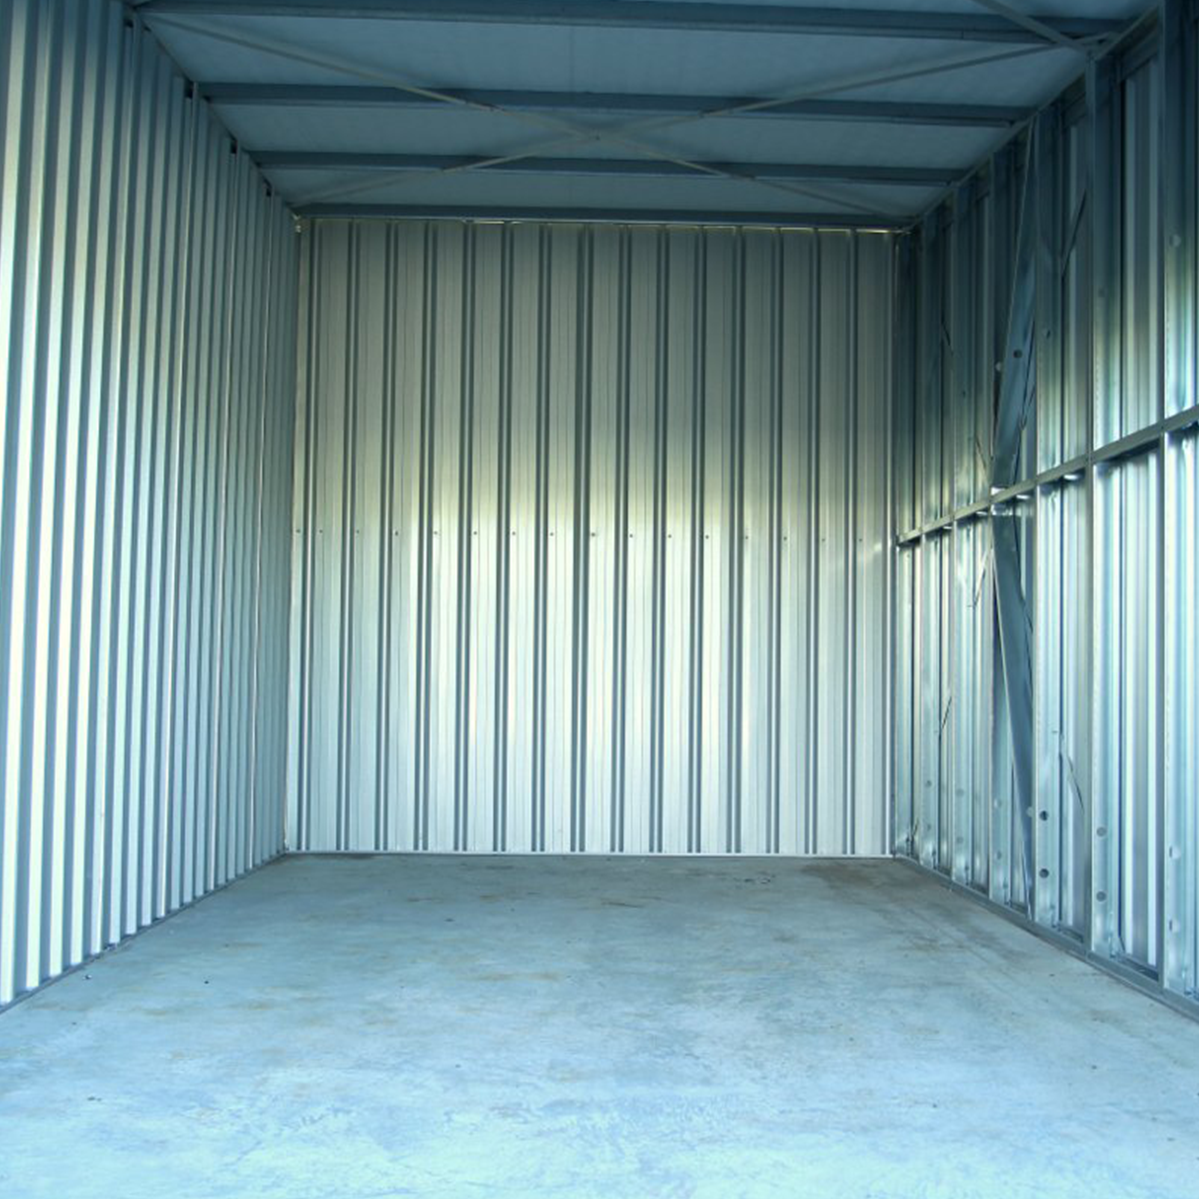 Inside storage shed